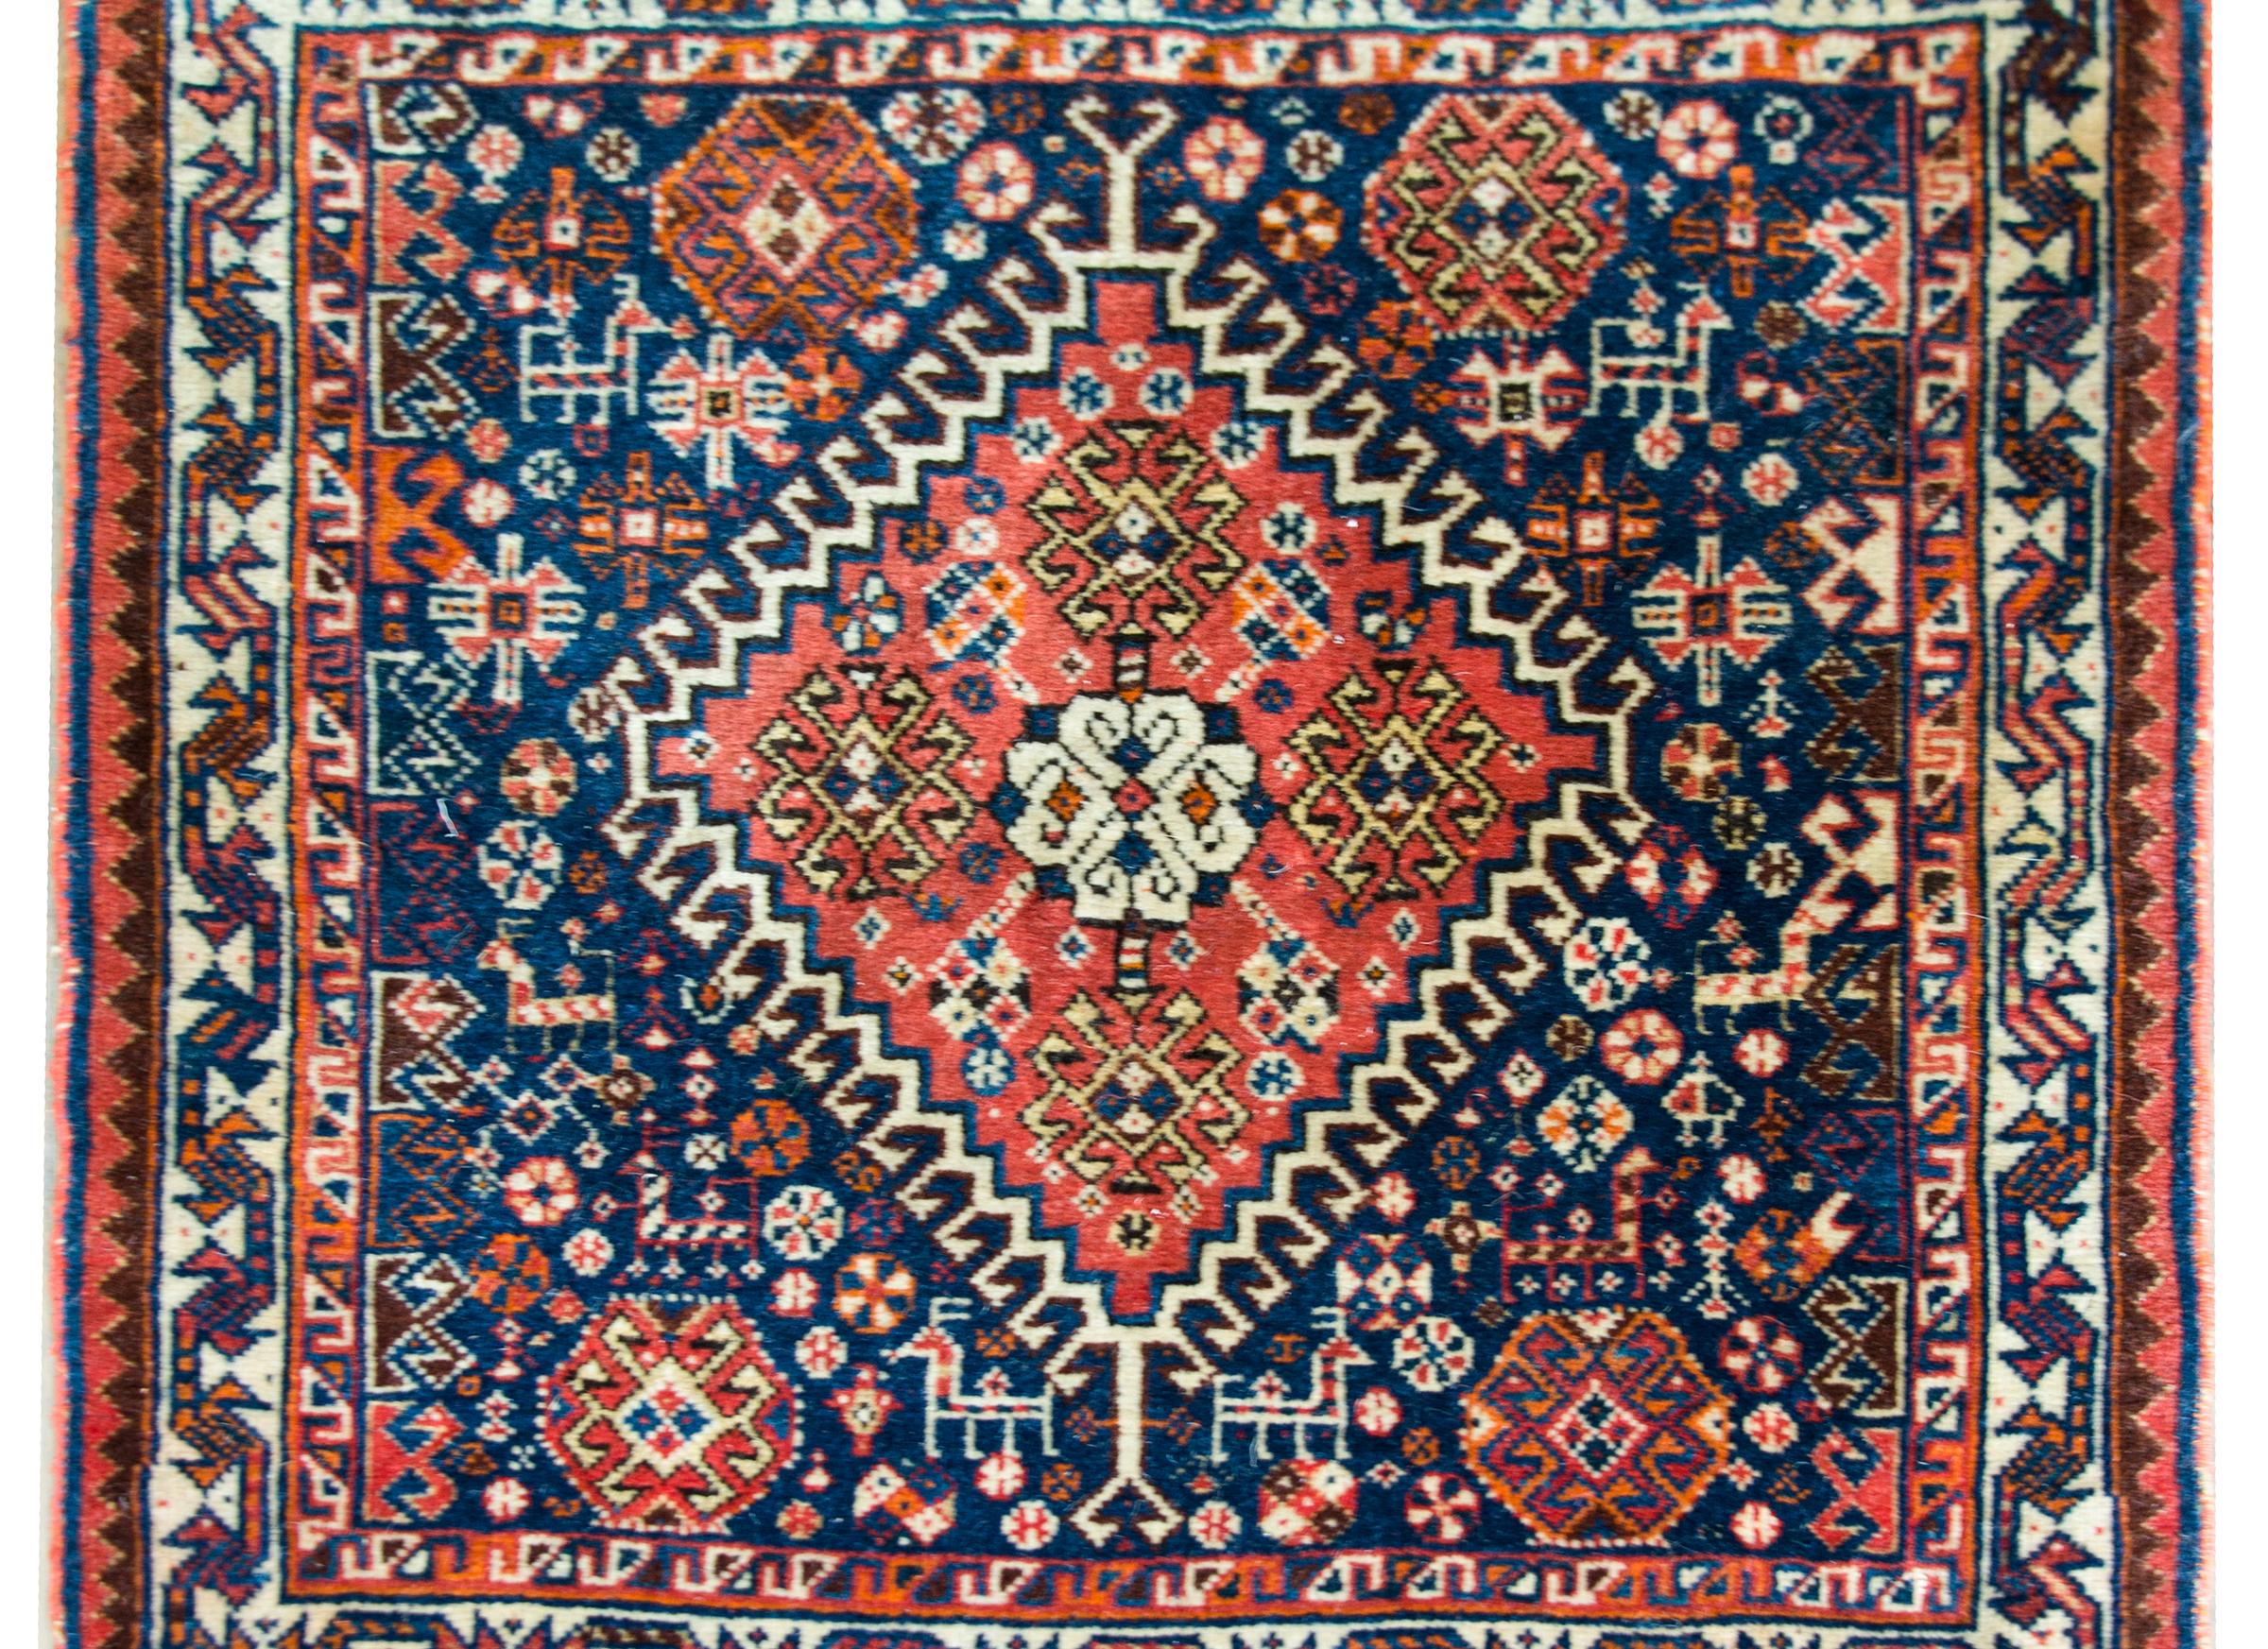 Ein schöner persischer Afschar-Teppich aus dem frühen 20. Jahrhundert mit einem phantastischen Muster, das ein großes zentrales Rautenmedaillon mit stilisierten Blumen enthält und inmitten eines Feldes dicht gewebter kleiner stilisierter Blumen und